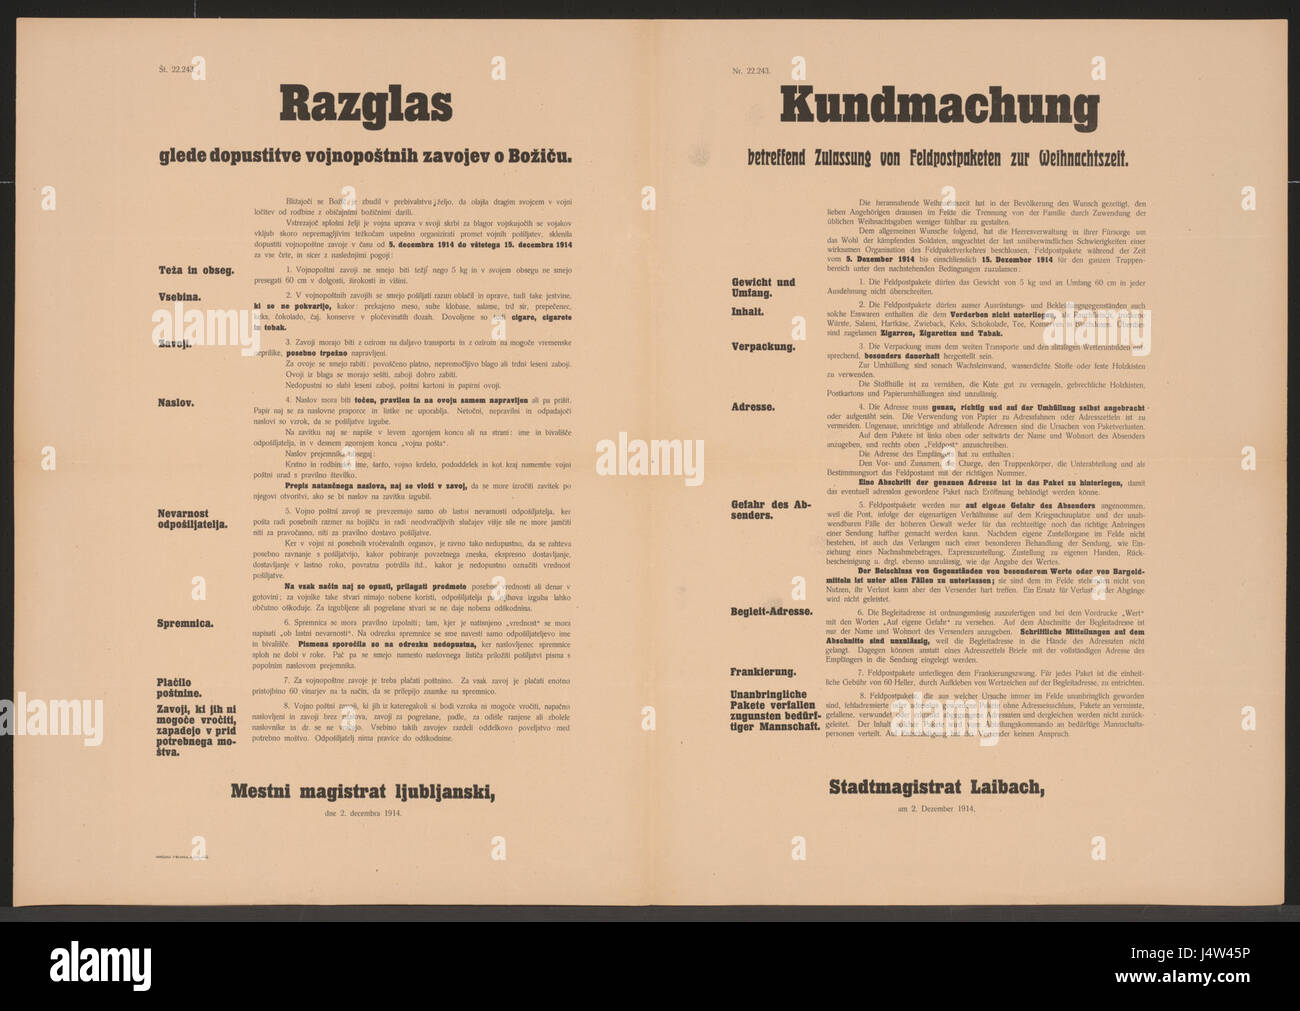 Zulassung von Feldpostpaketen zur Weihnachtszeit   Kundmachung   Laibach   Mehrsprachiges Plakat 1914 Stock Photo